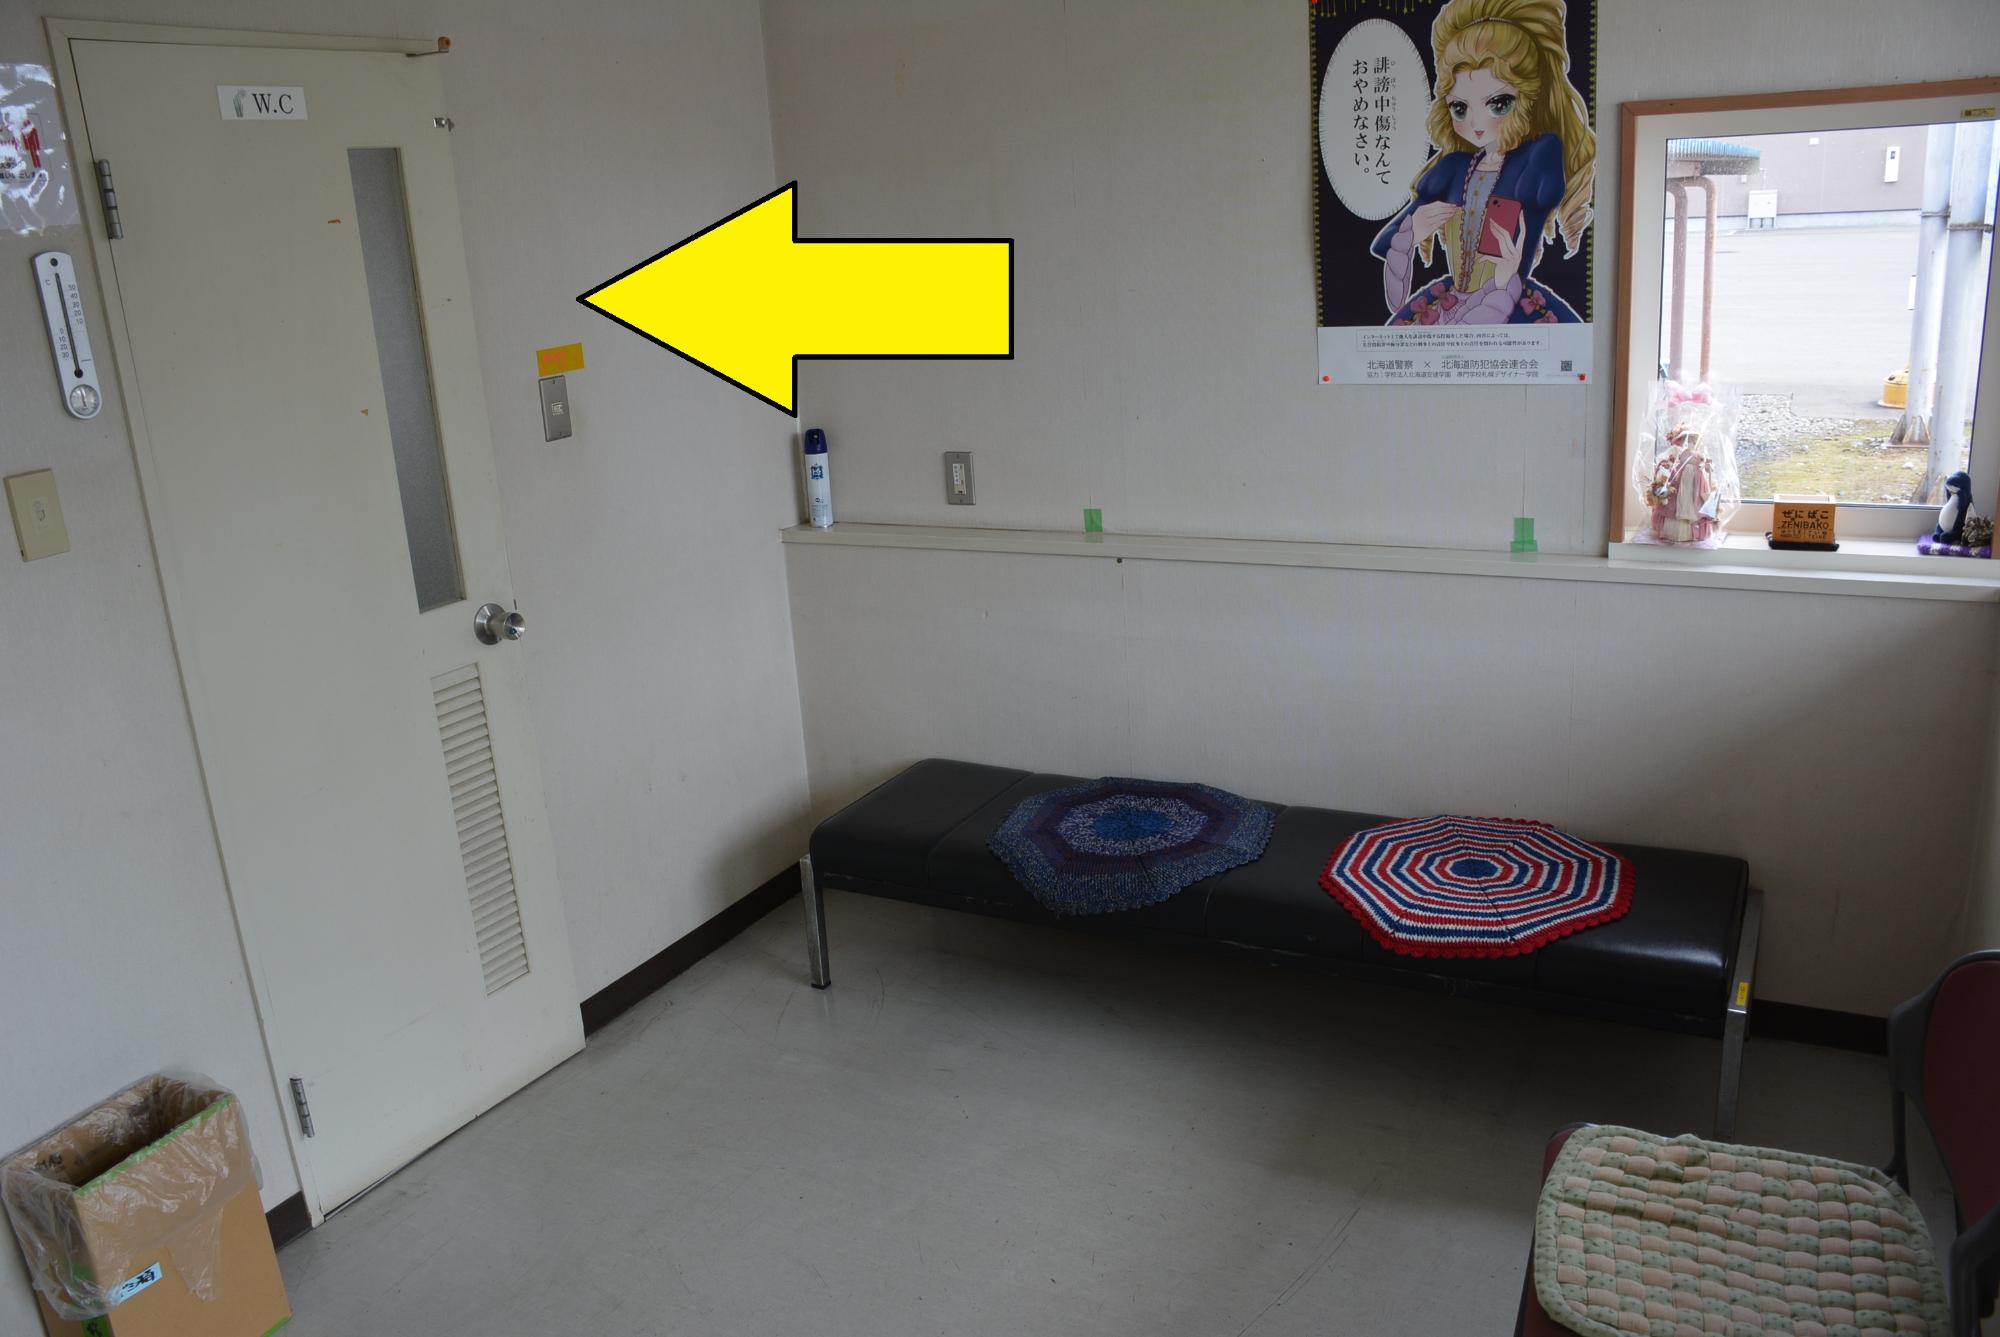 壁にポスターが掲示され、黒い長椅子があり、トイレの場所を矢印で示した写真